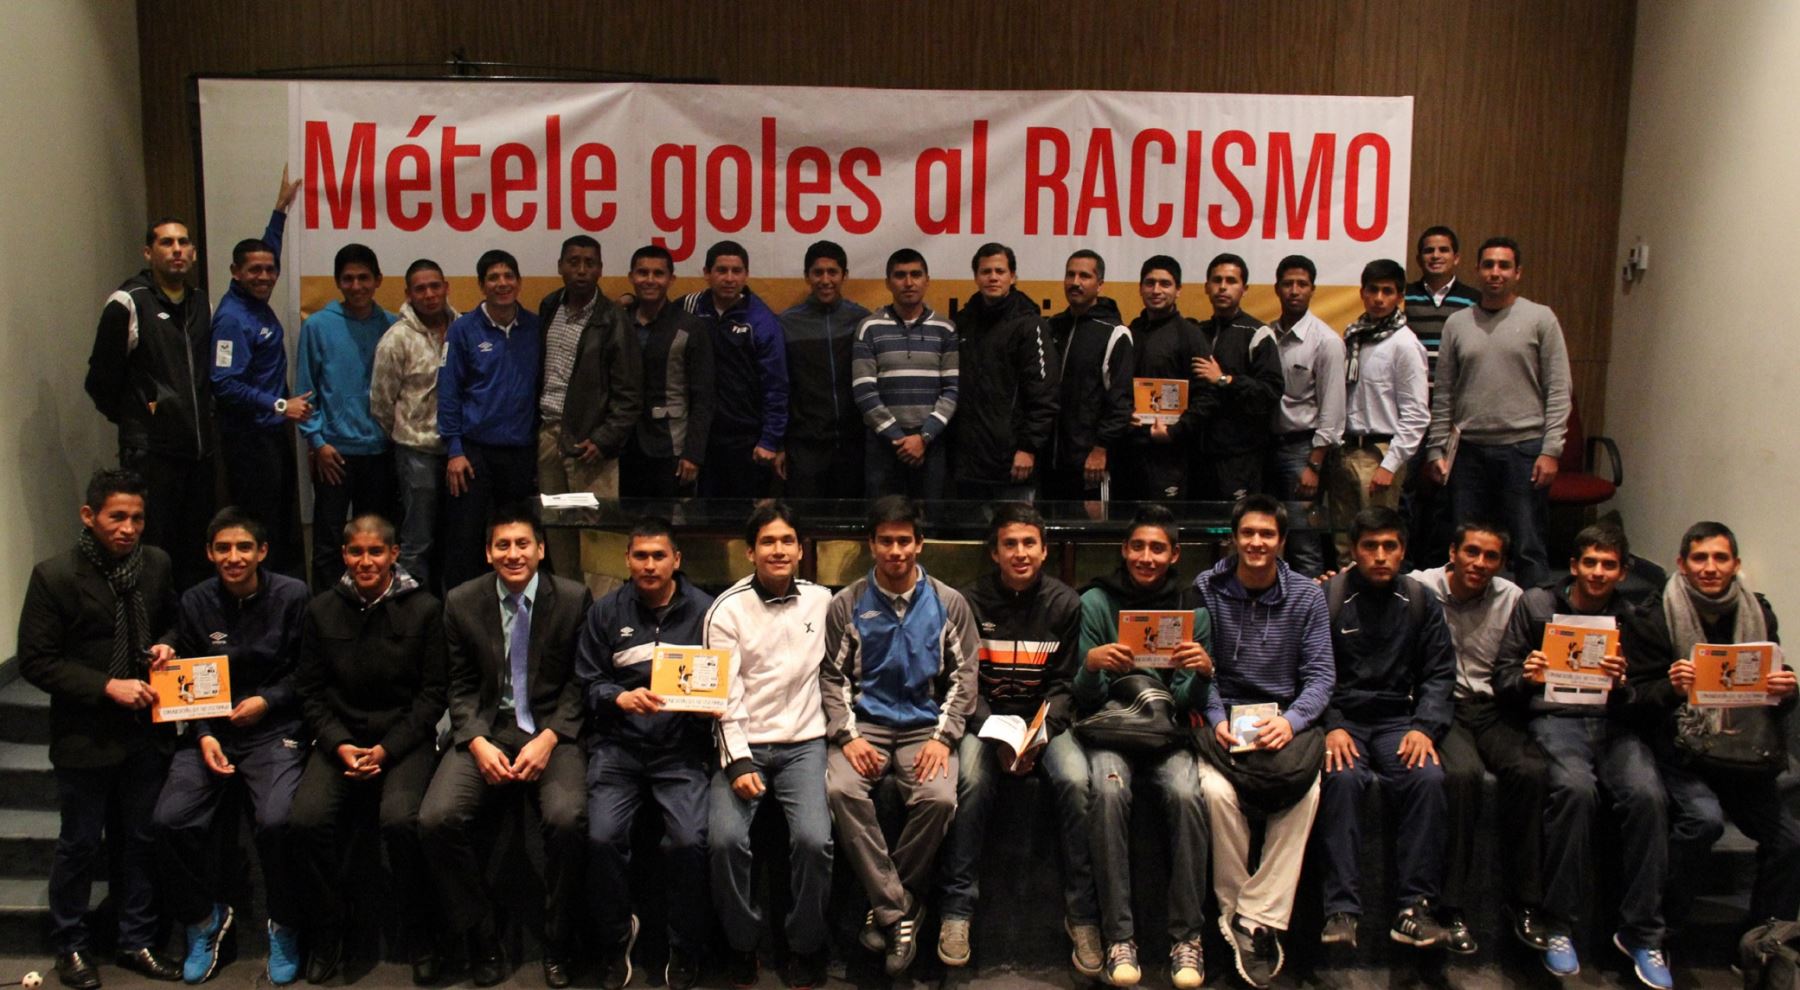 Árbitros capacitados para luchar contra el racismo en el fútbol